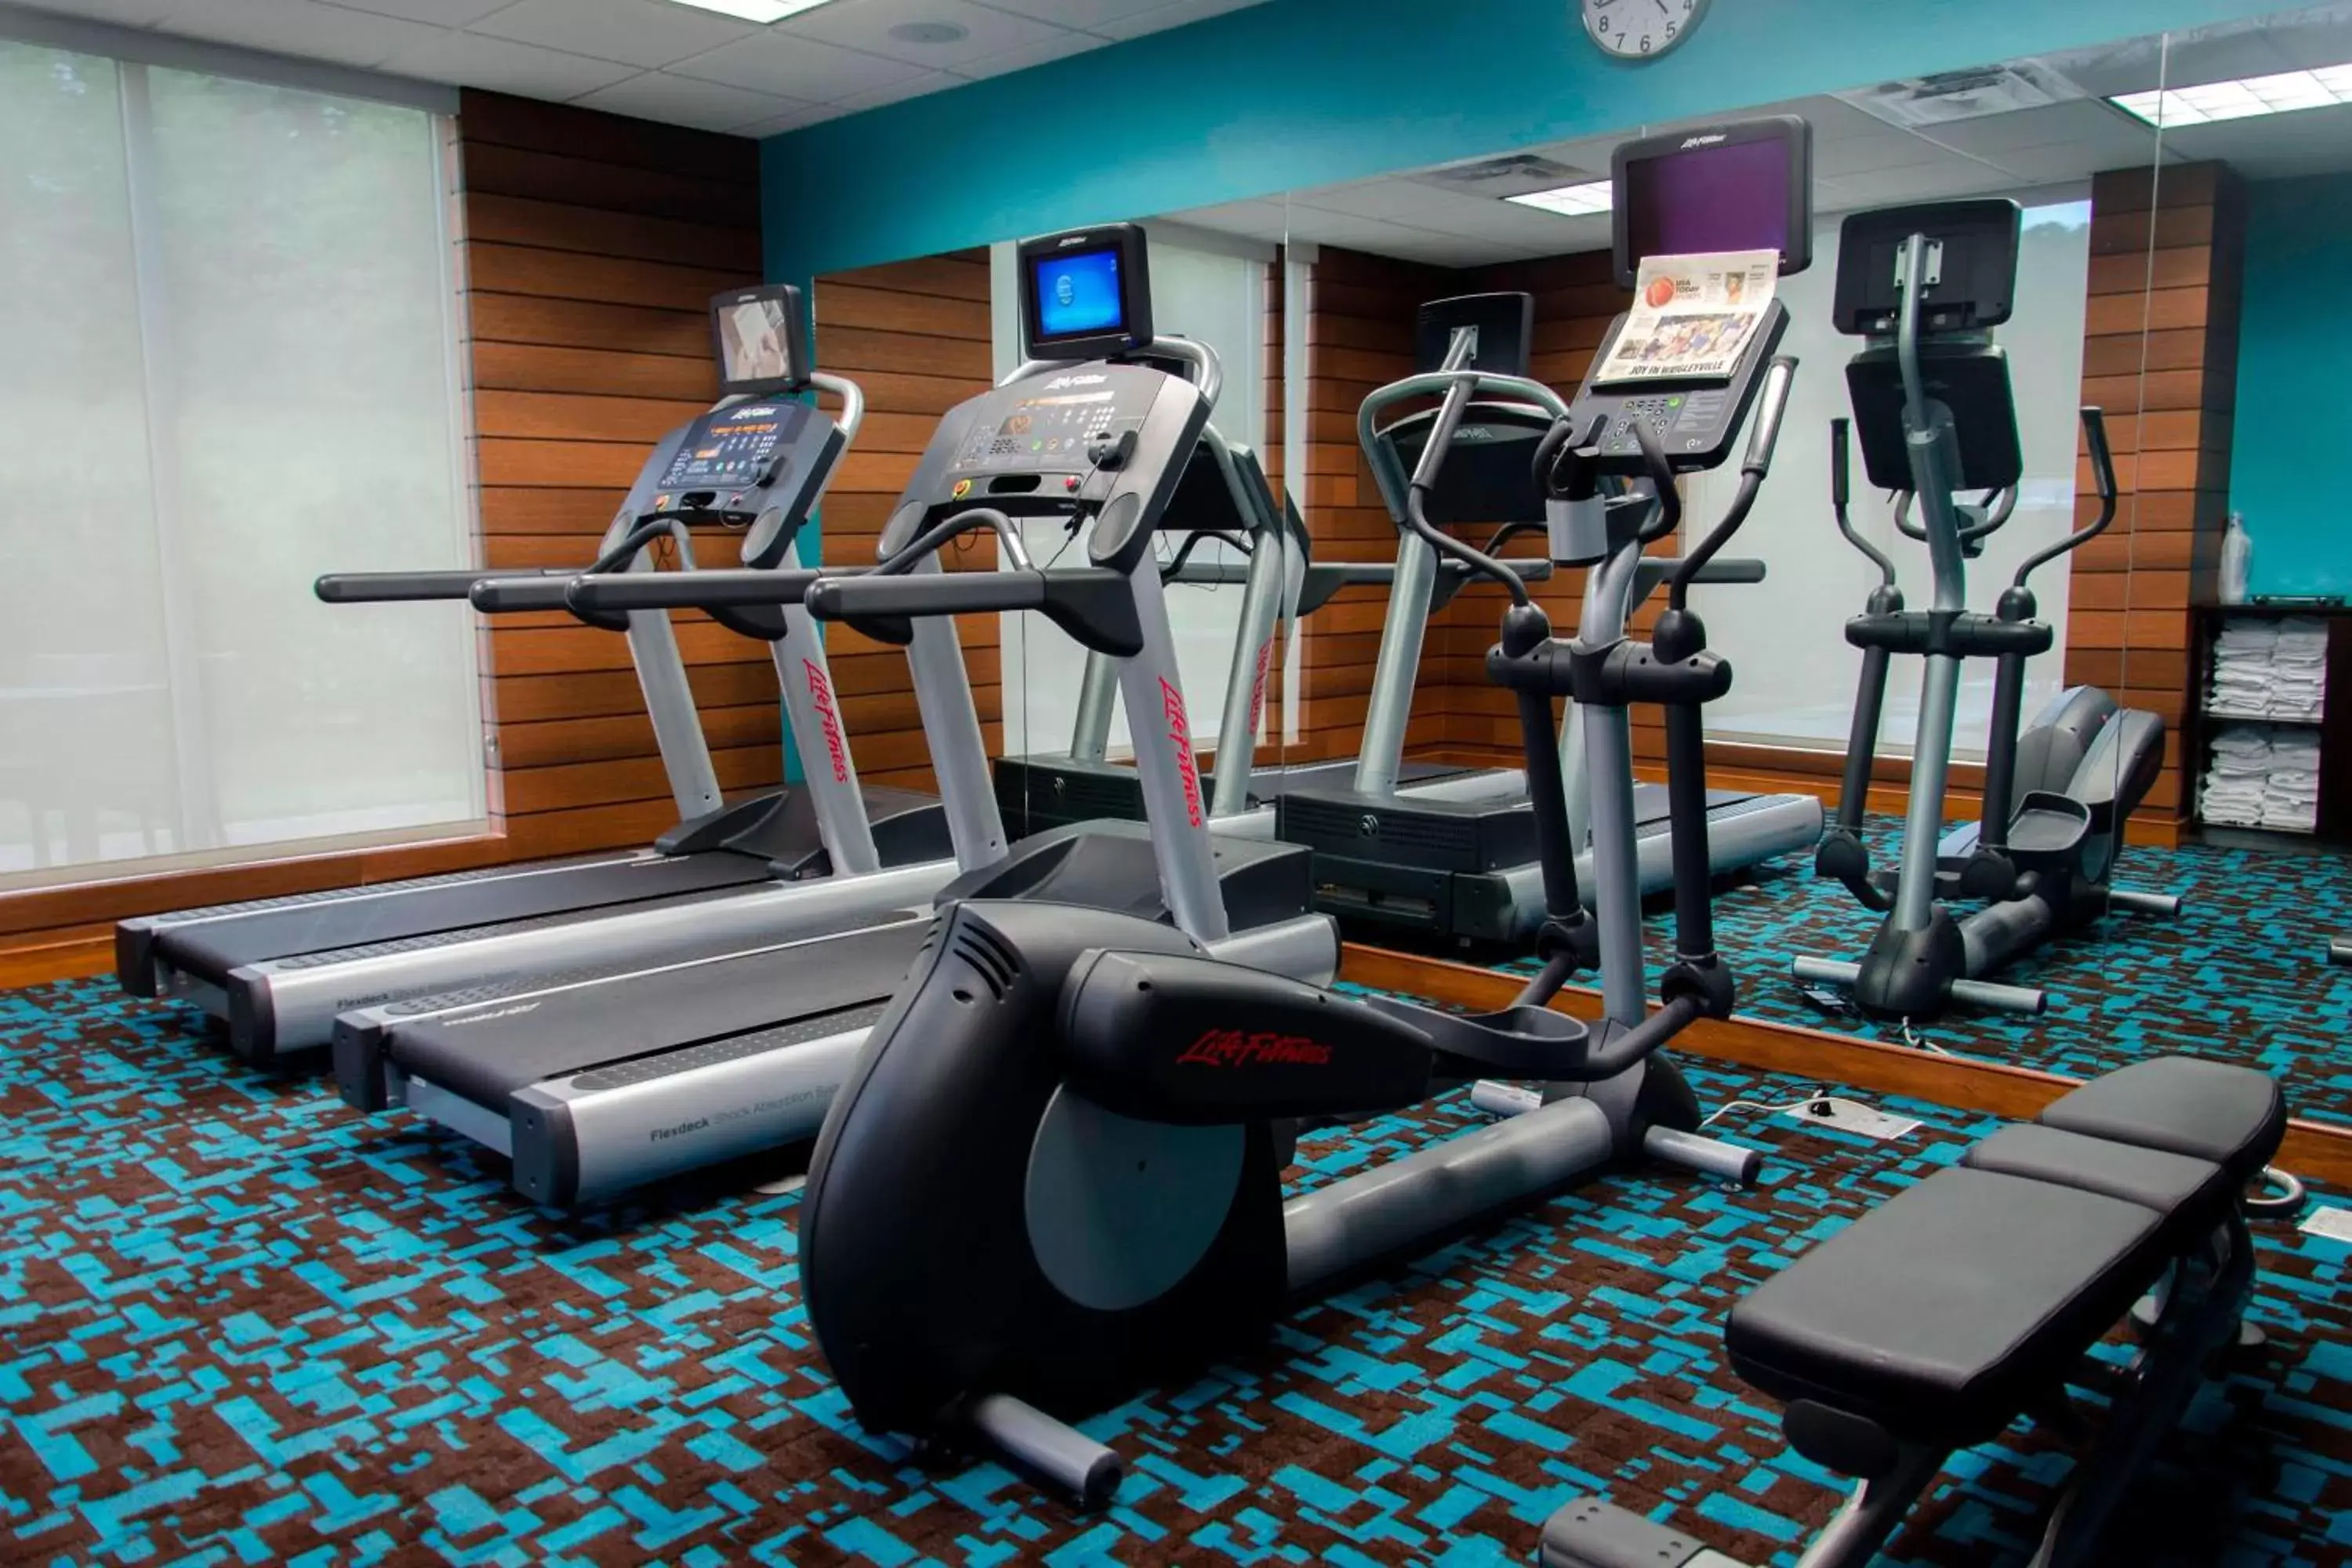 Fitness centre/facilities, Fitness Center/Facilities in Fairfield Inn & Suites by Marriott Atlanta Cumming/Johns Creek